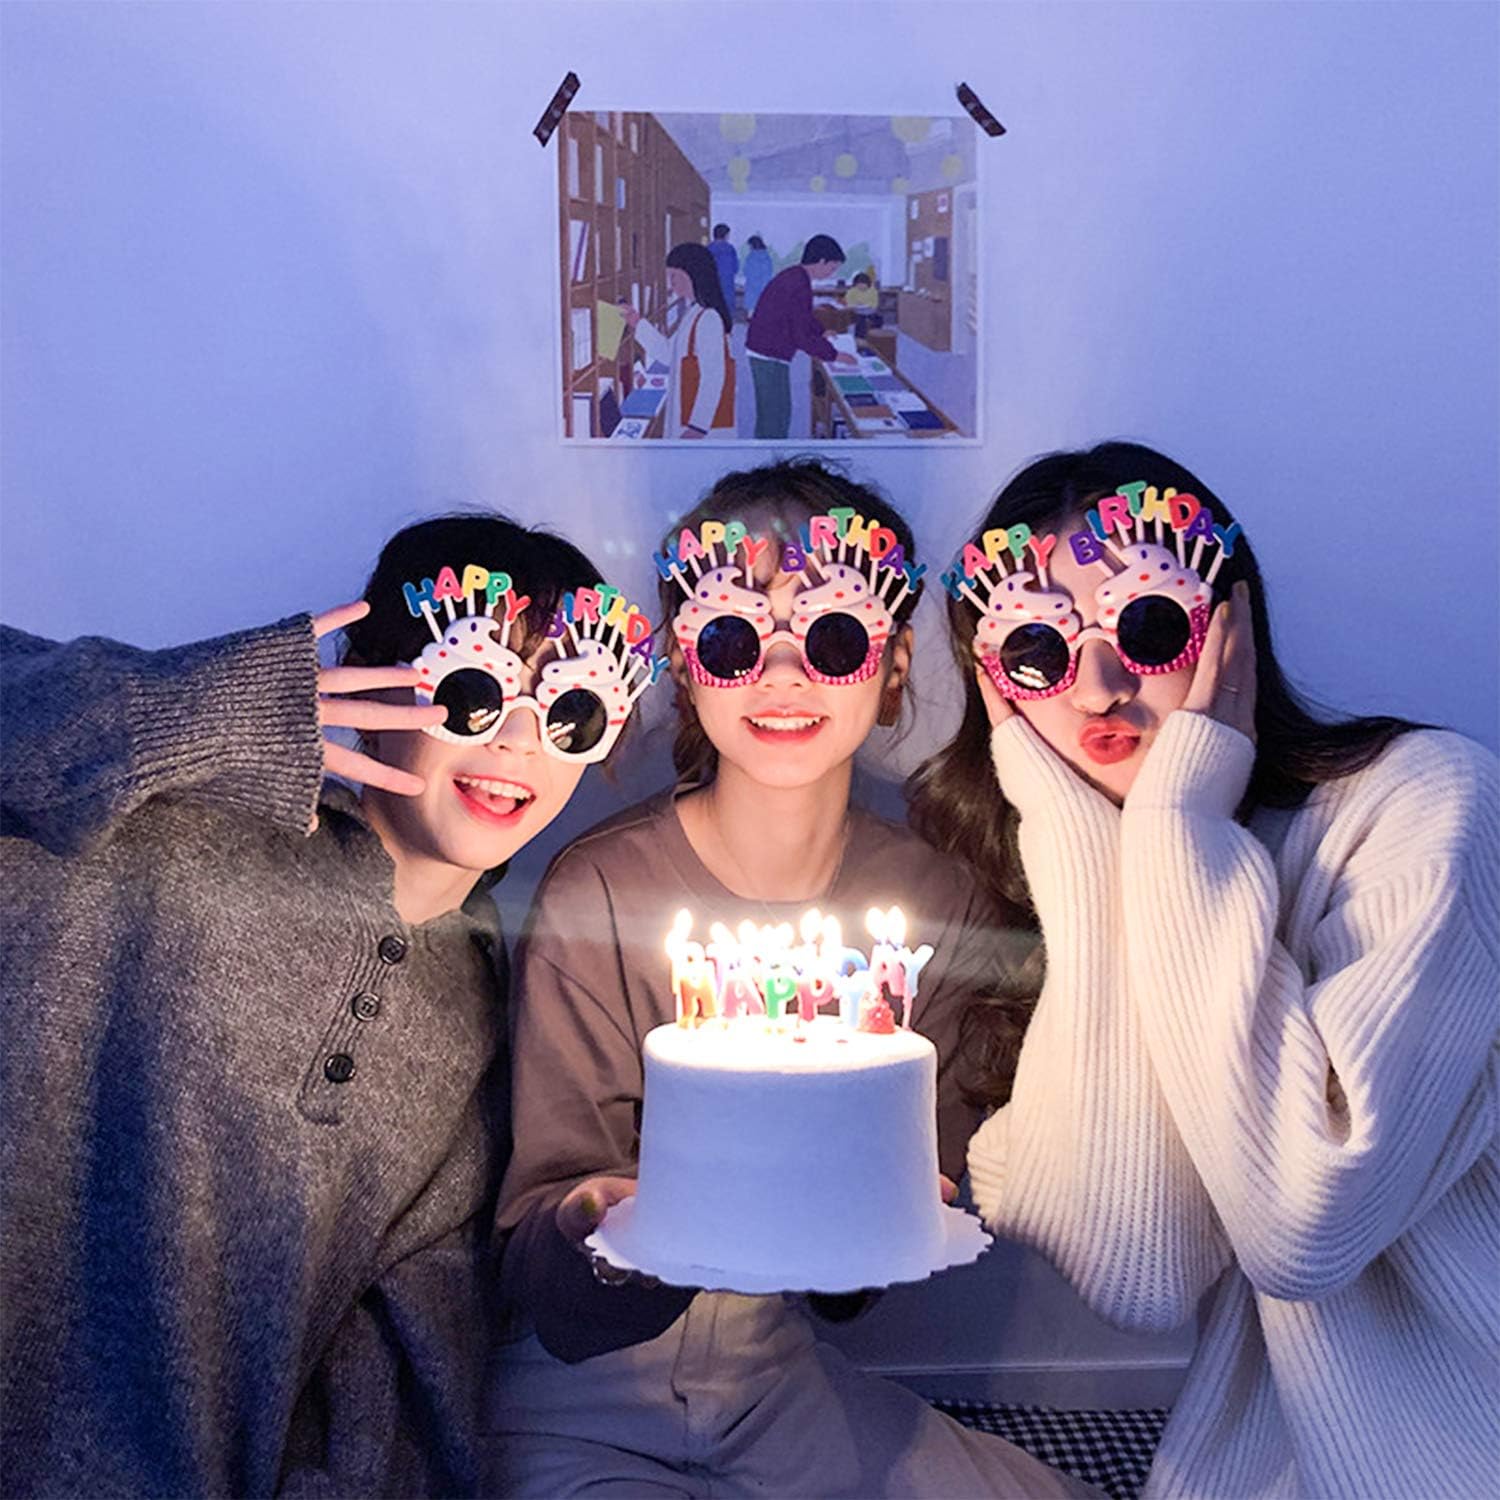 Happy Birthday Yazılı Pembe Fuşya Renk Parti Gözlüğü 12x7 cm (Lisinya)